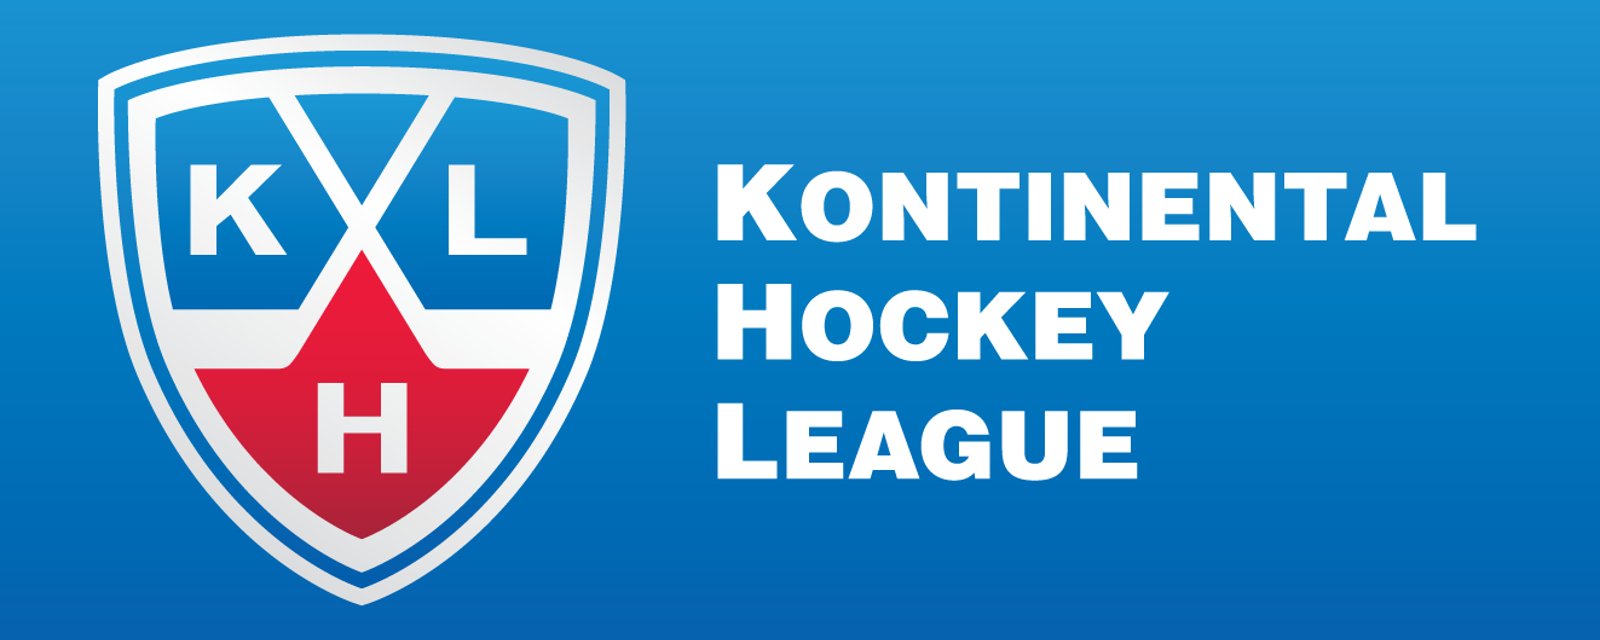 Invasion de l'Ukraine: Plusieurs joueurs quittent la KHL